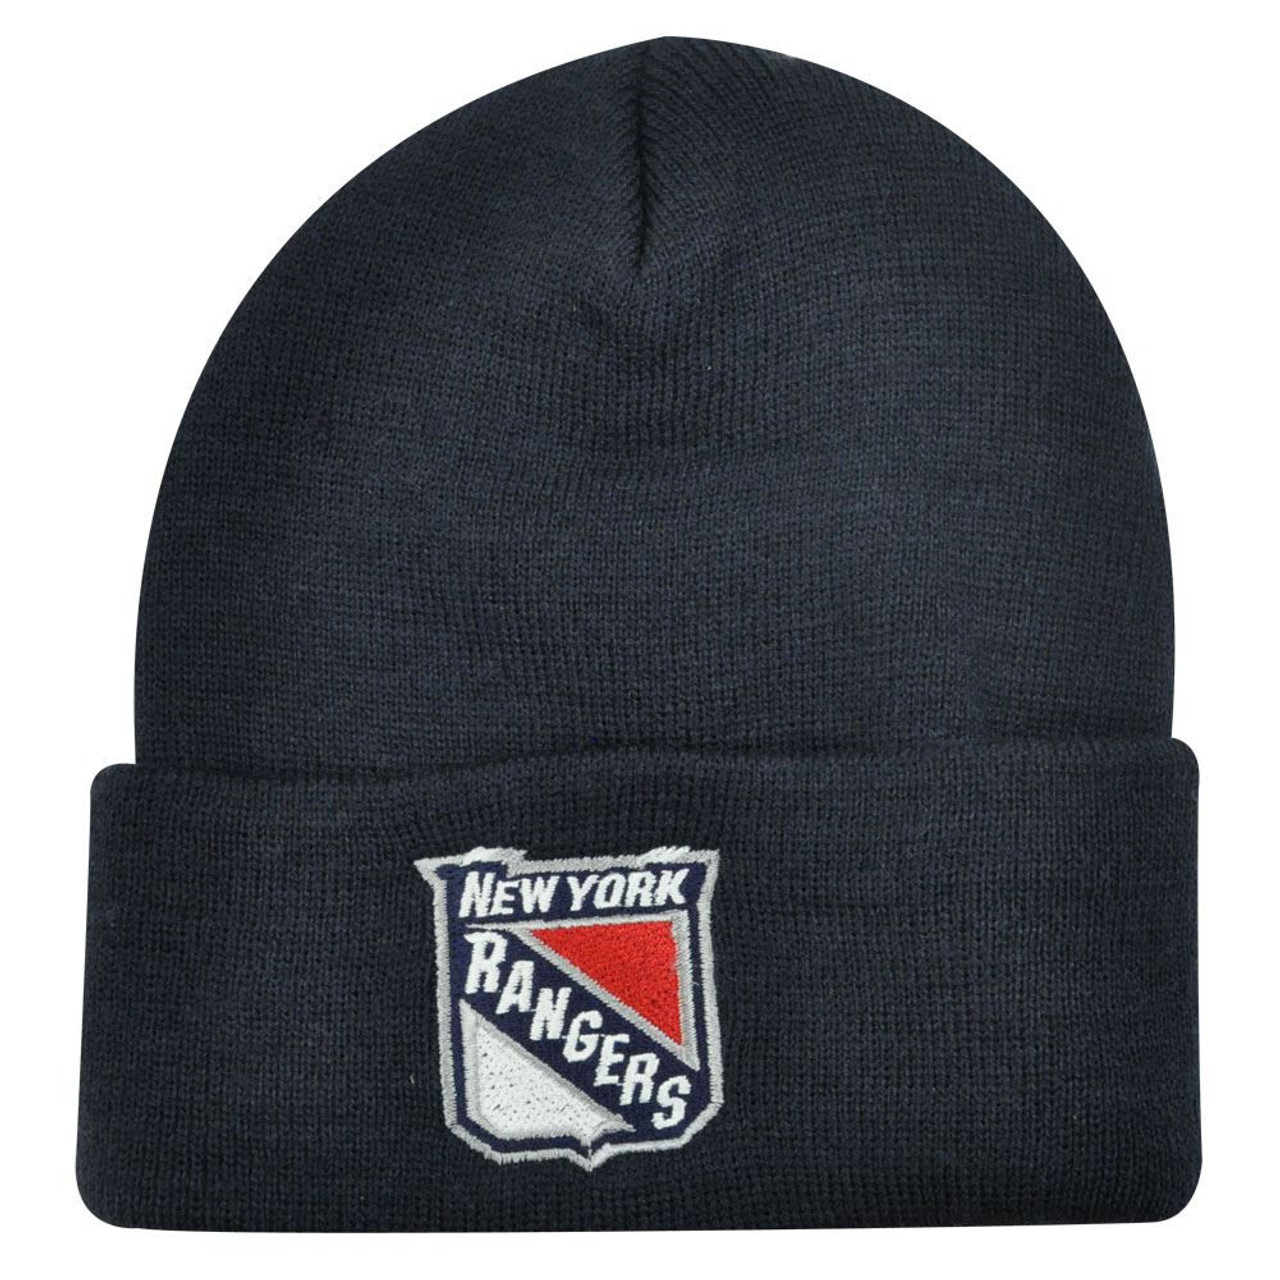 Official Kids New York Rangers Apparel & Merchandise